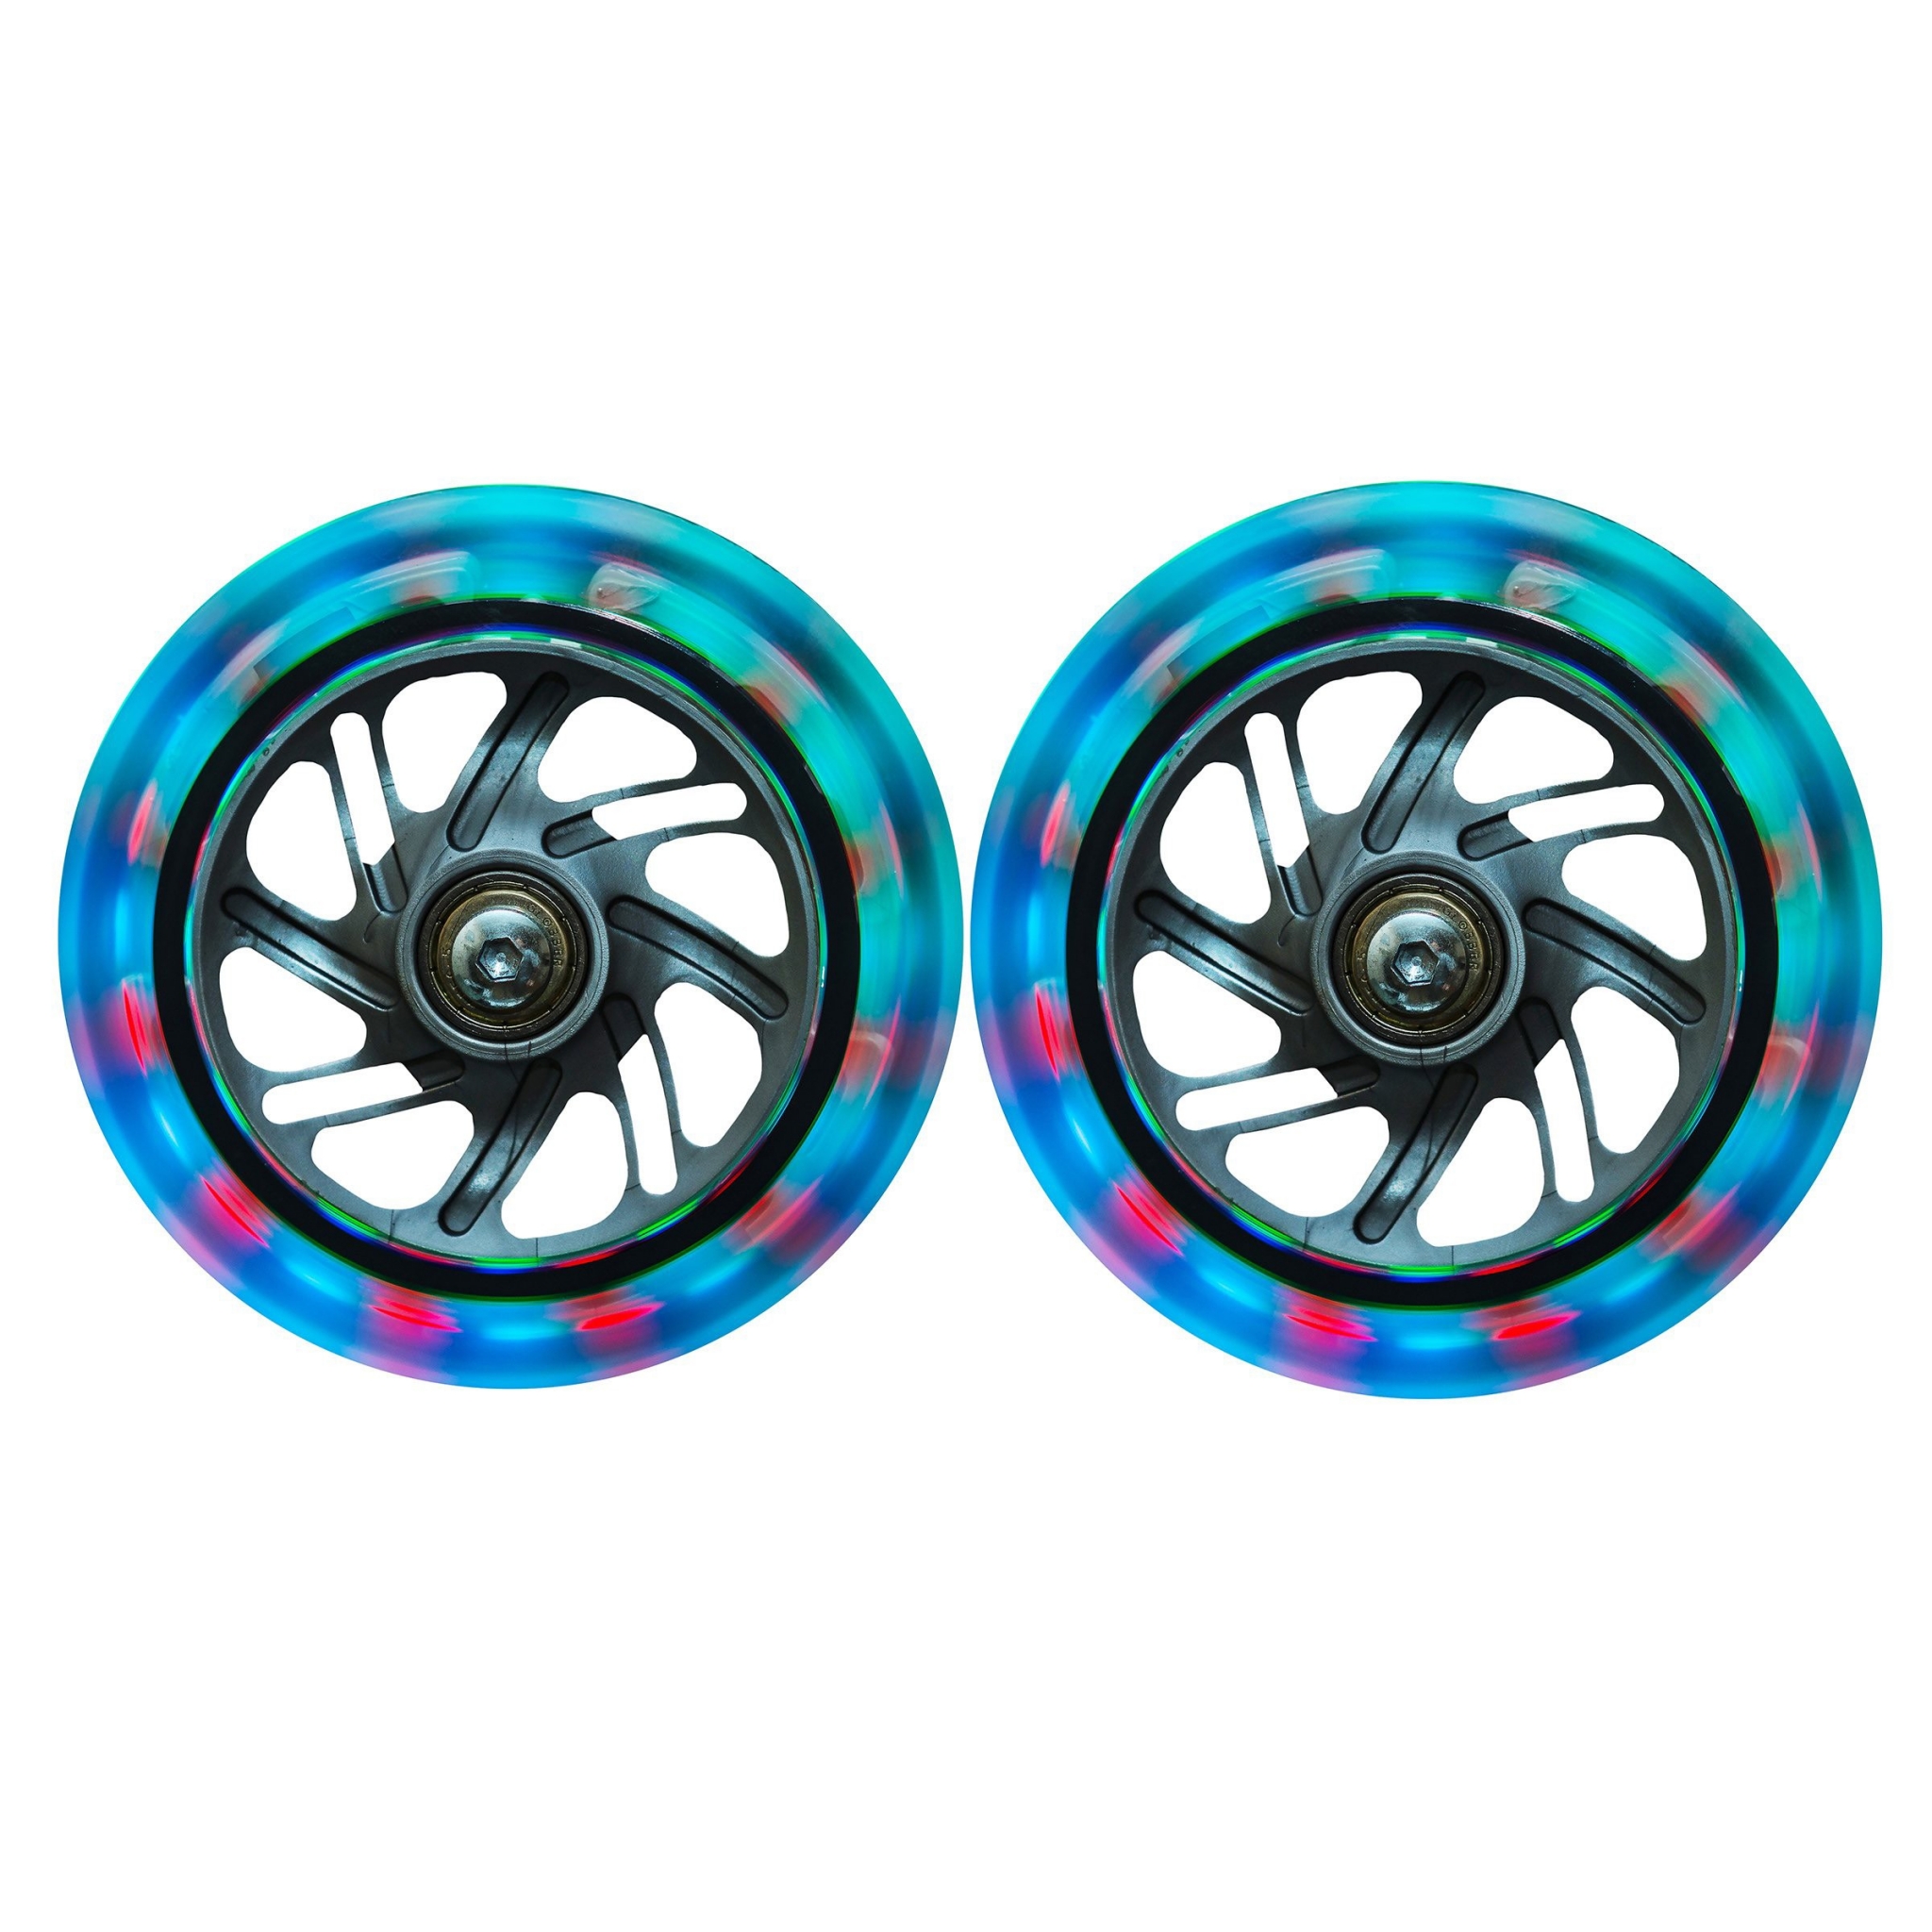 https://www.globber.com/ca/390-large_default2x/LED-wheels.jpg